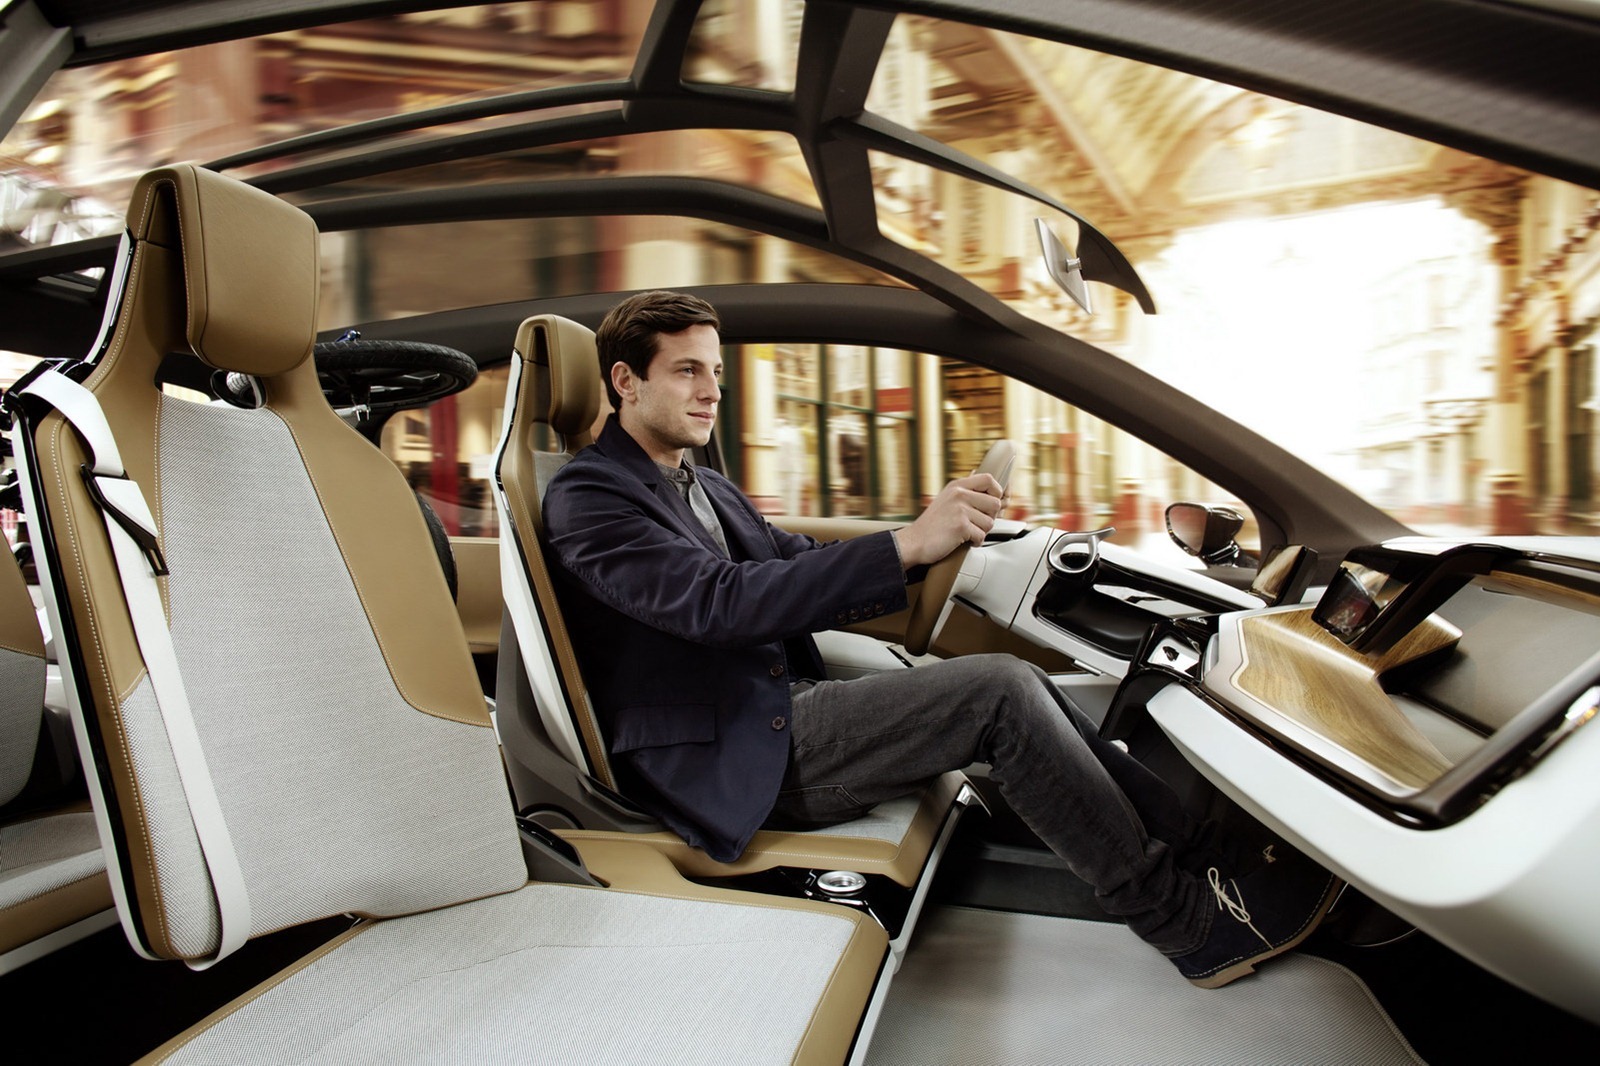 Conceptul BMW i3 expus la Londra in primul i Store are un interior complet eco